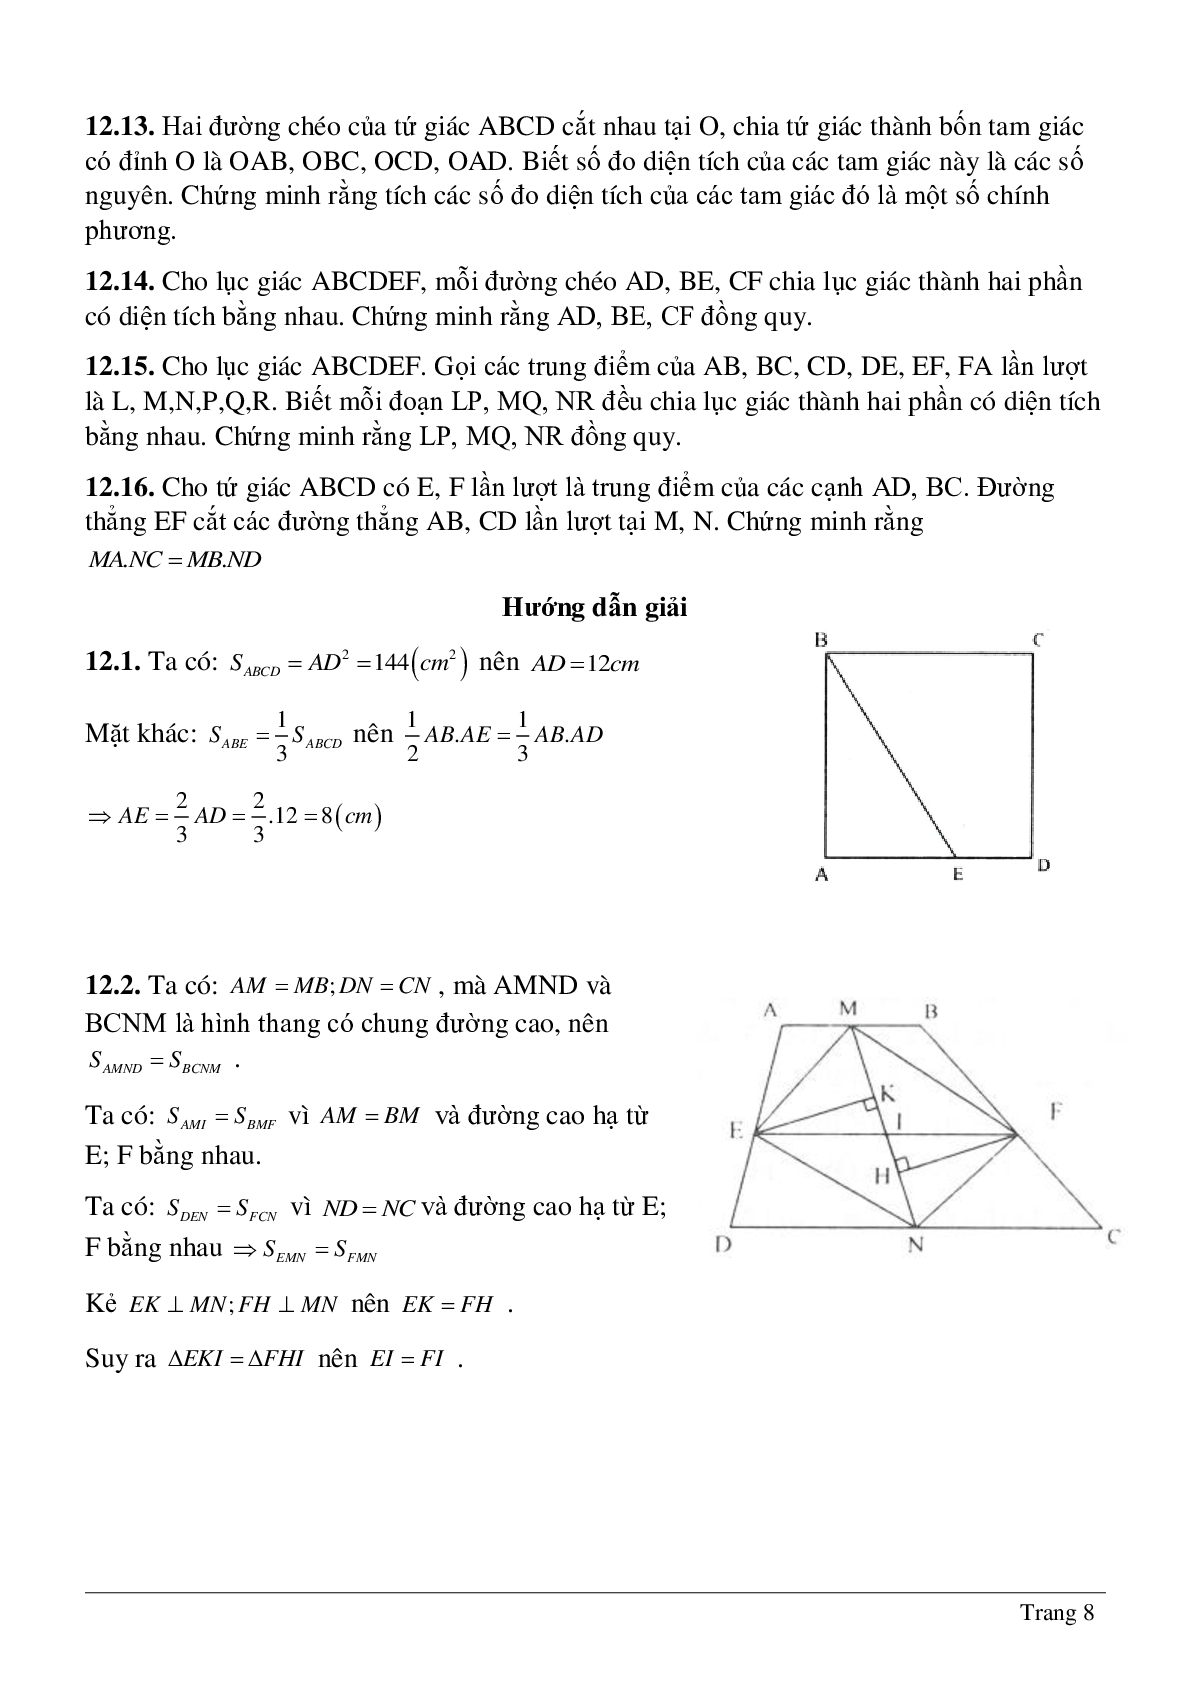 Phương pháp diện tích - Hình học toán 8 (trang 8)